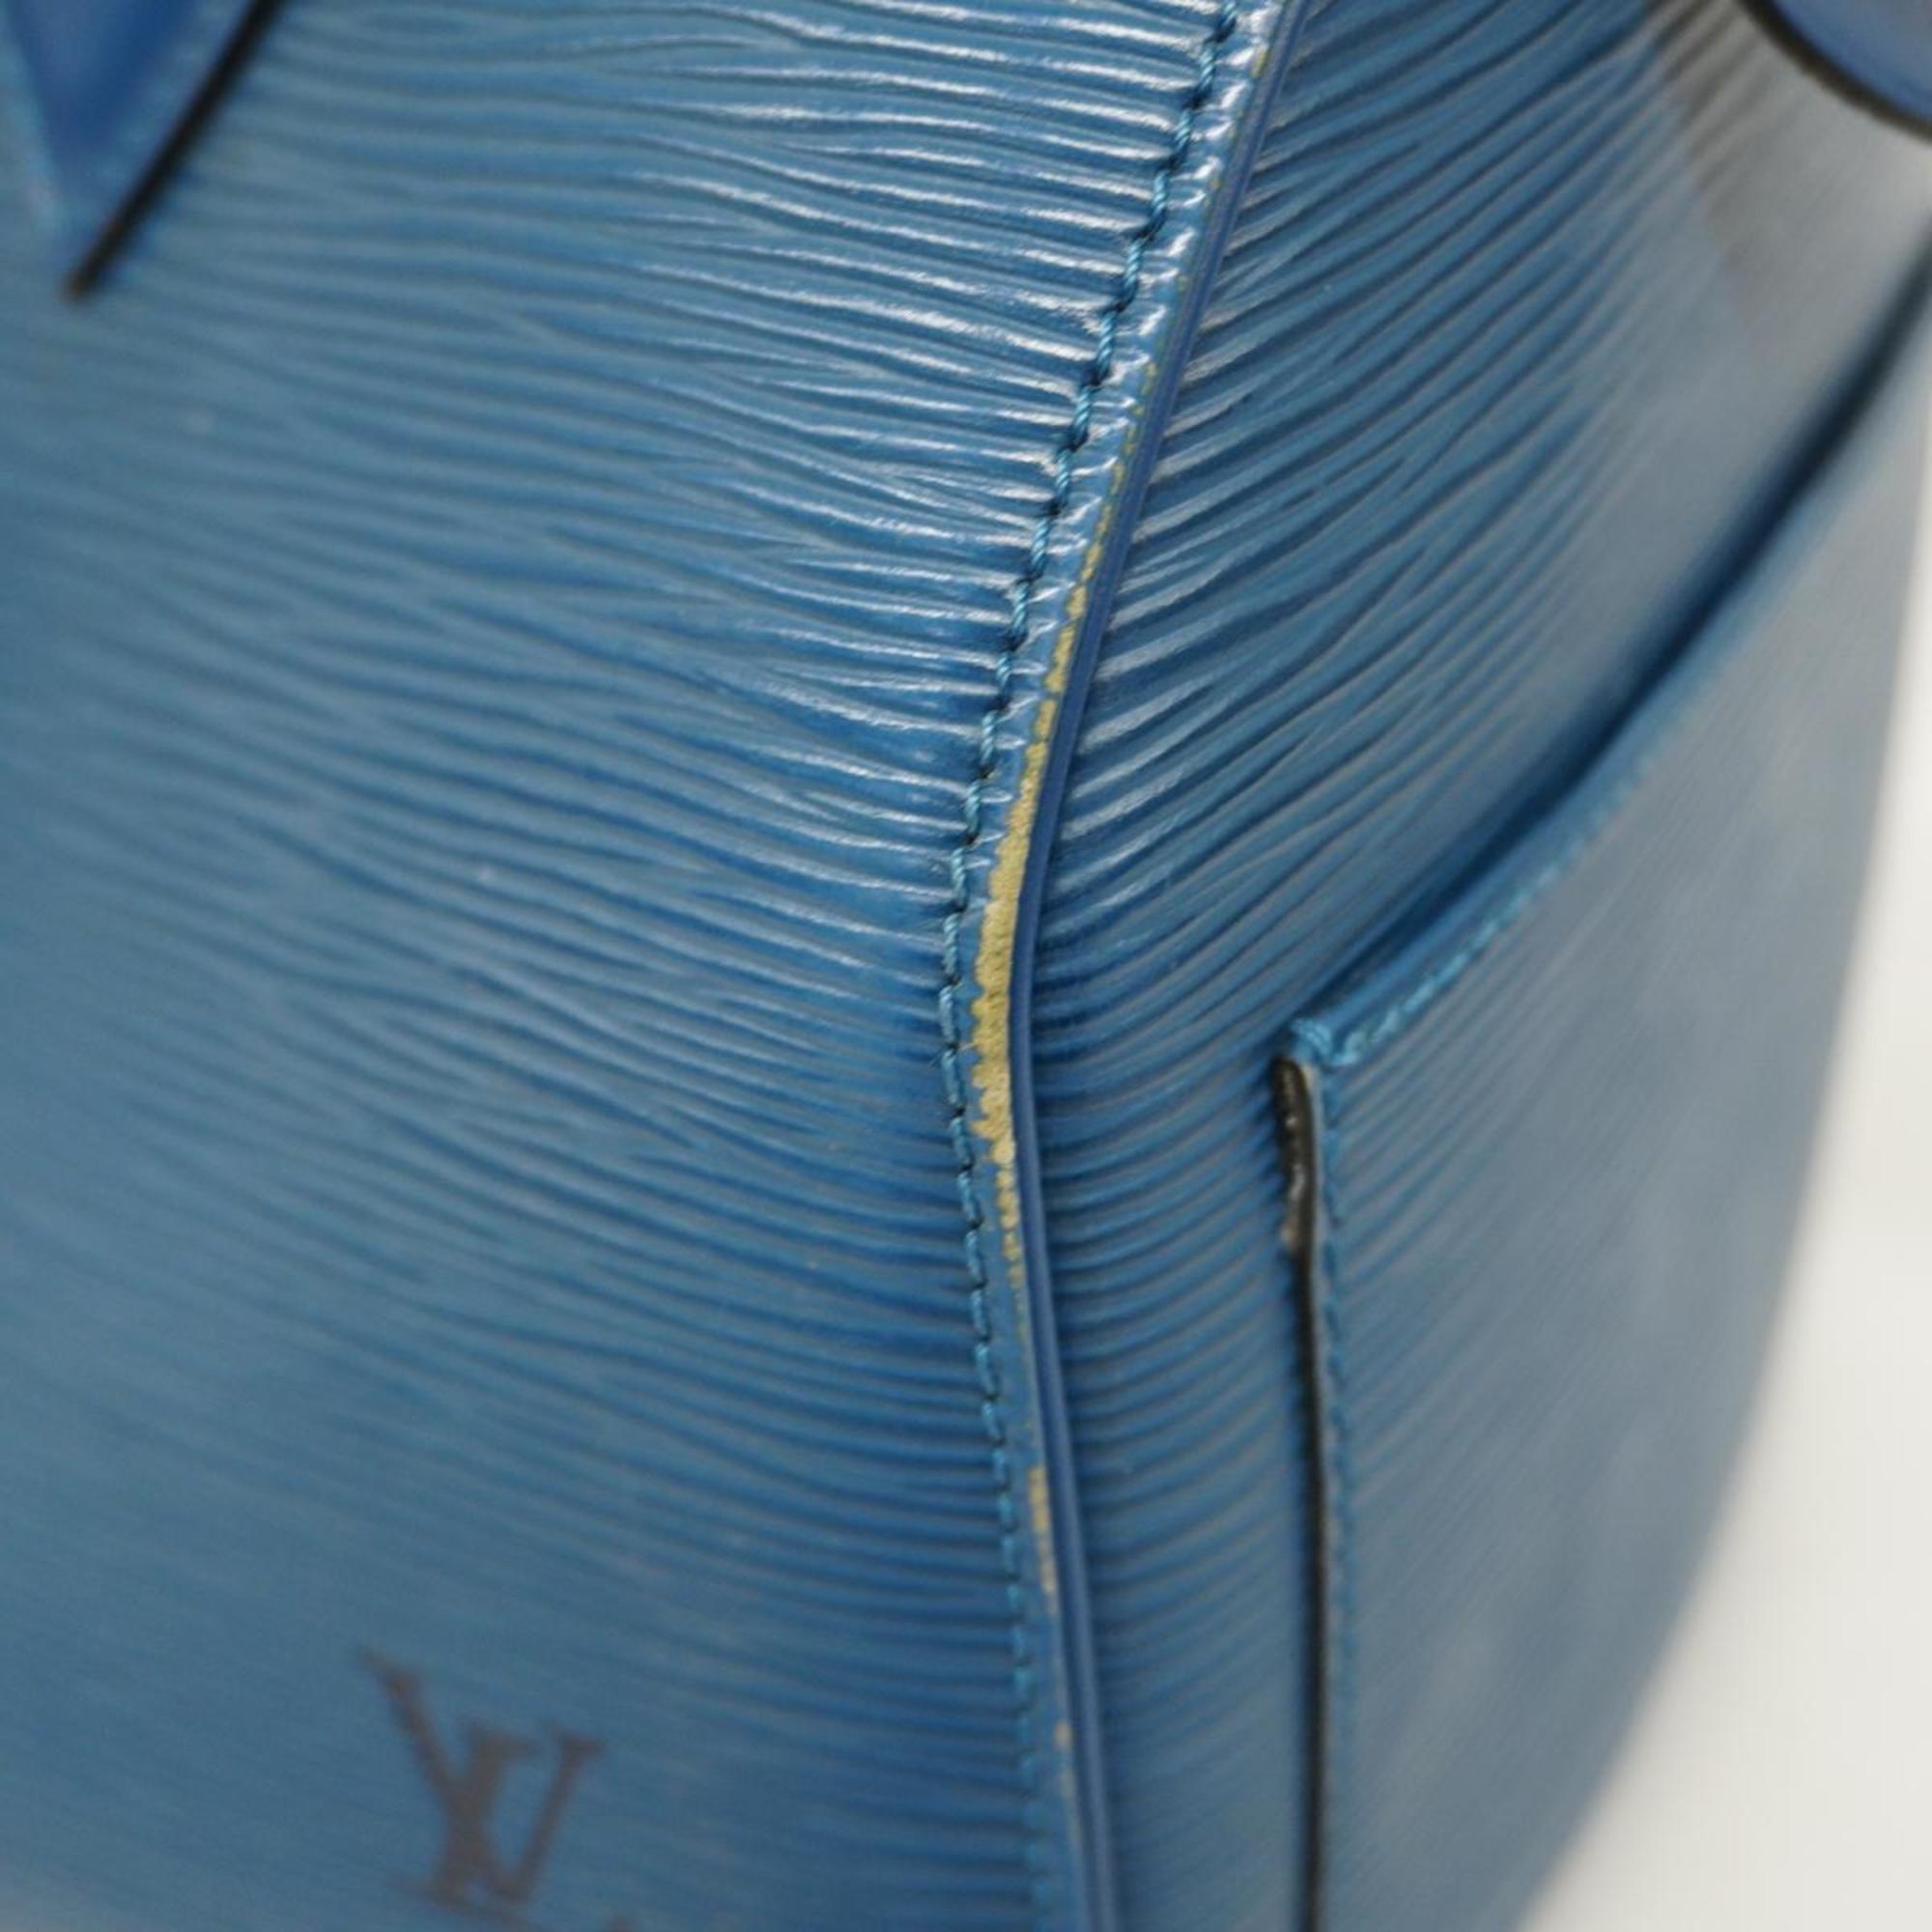 ルイ・ヴィトン(Louis Vuitton) ルイ・ヴィトン ハンドバッグ エピ スピーディ25 M43015 トレドブルーレディース